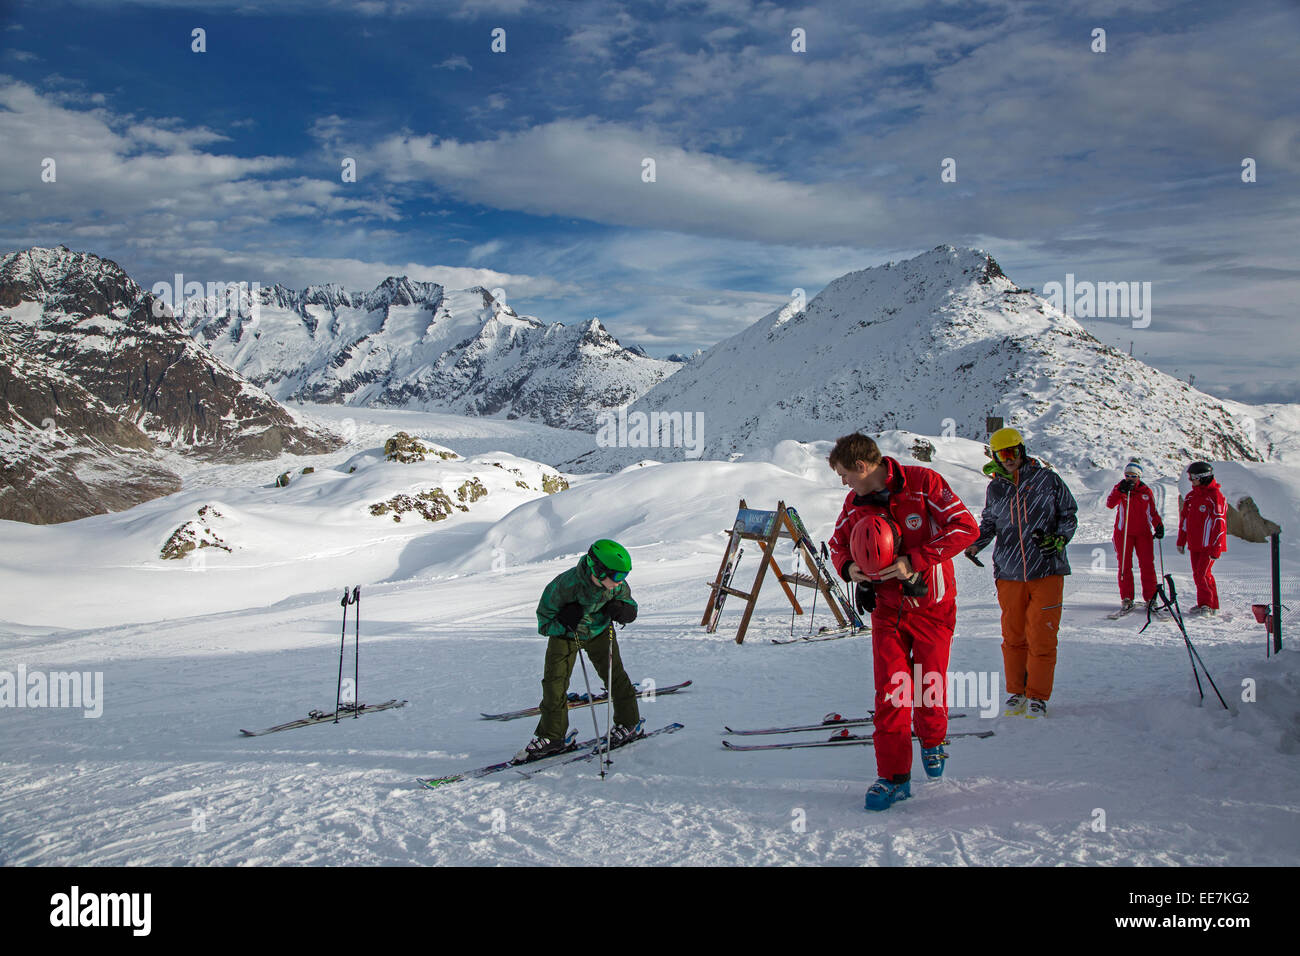 Schweizer Skilehrer sammeln auf Skipiste in der Nähe von den Aletsch-Gletscher im Winter, Riederalp, Wallis / Valais, Schweiz Stockfoto